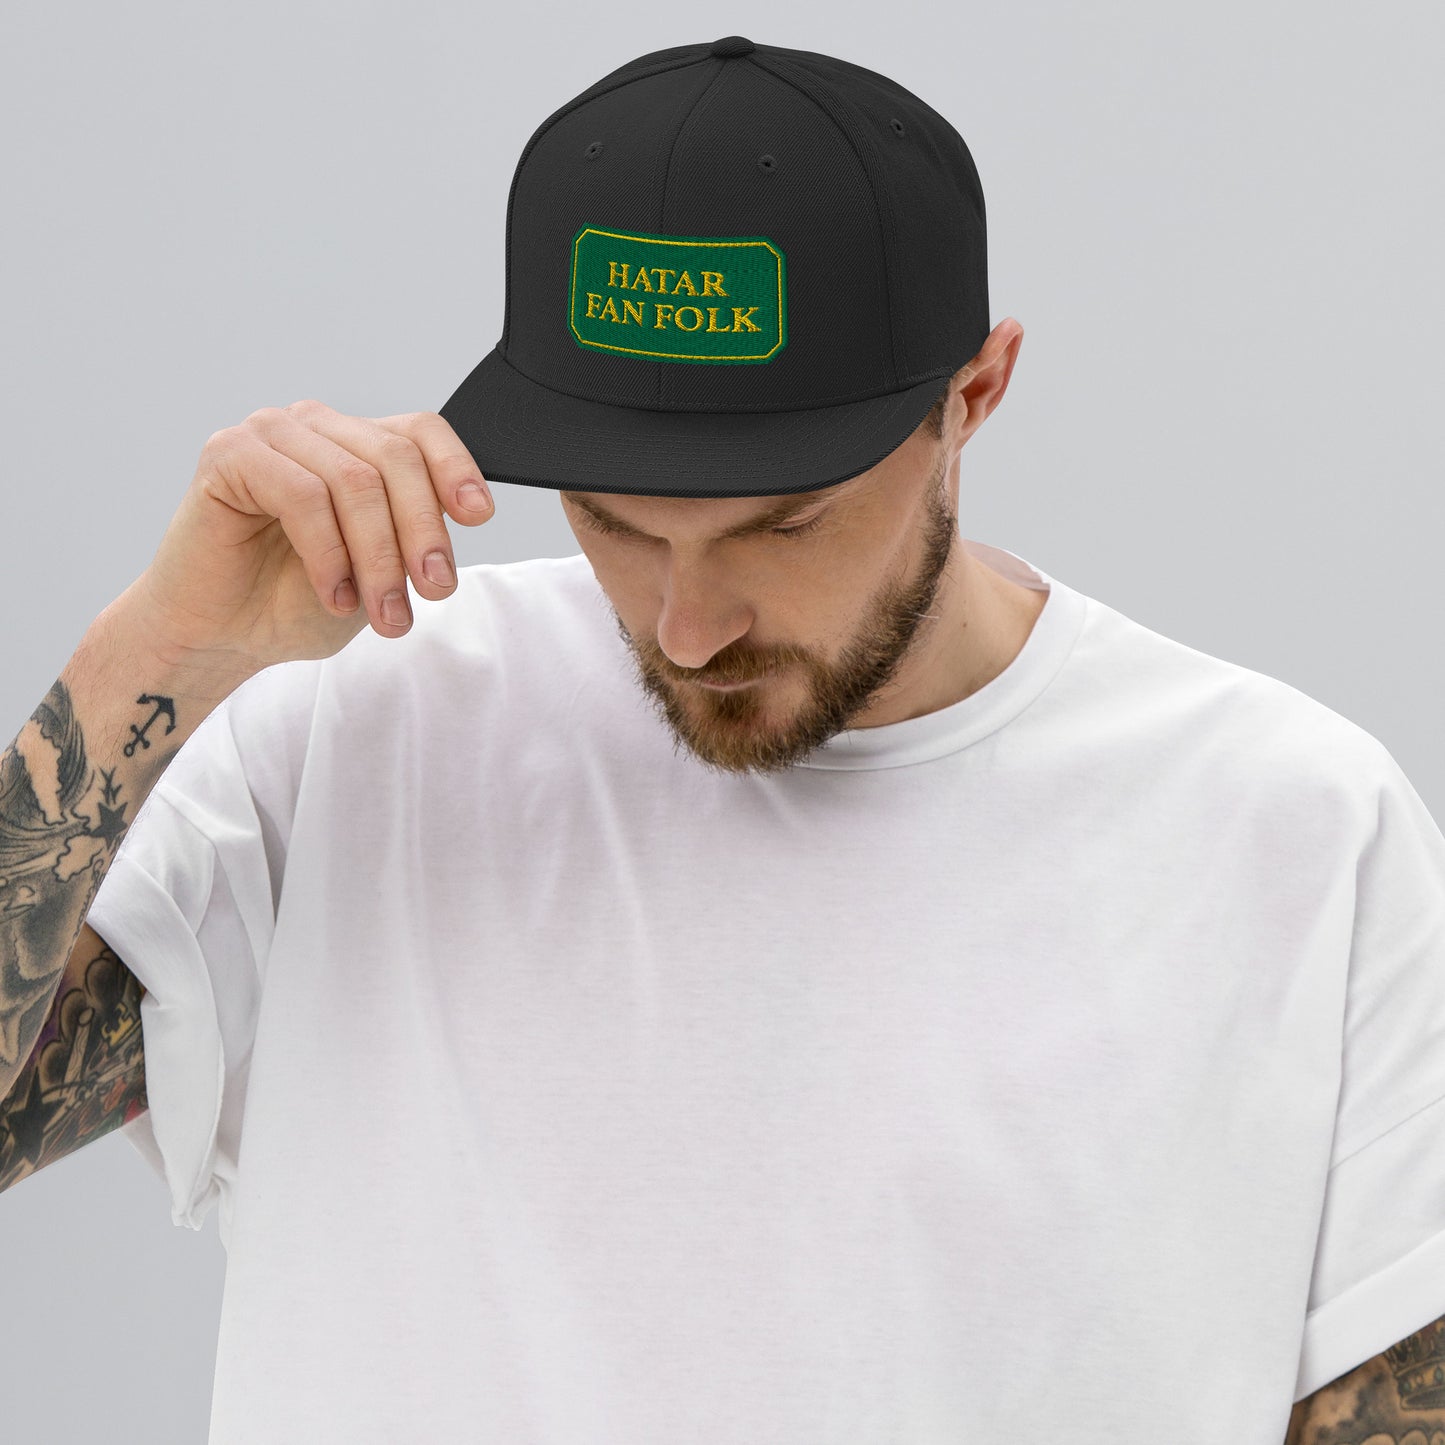 HATAR FAN FOLK - Snapback Hat